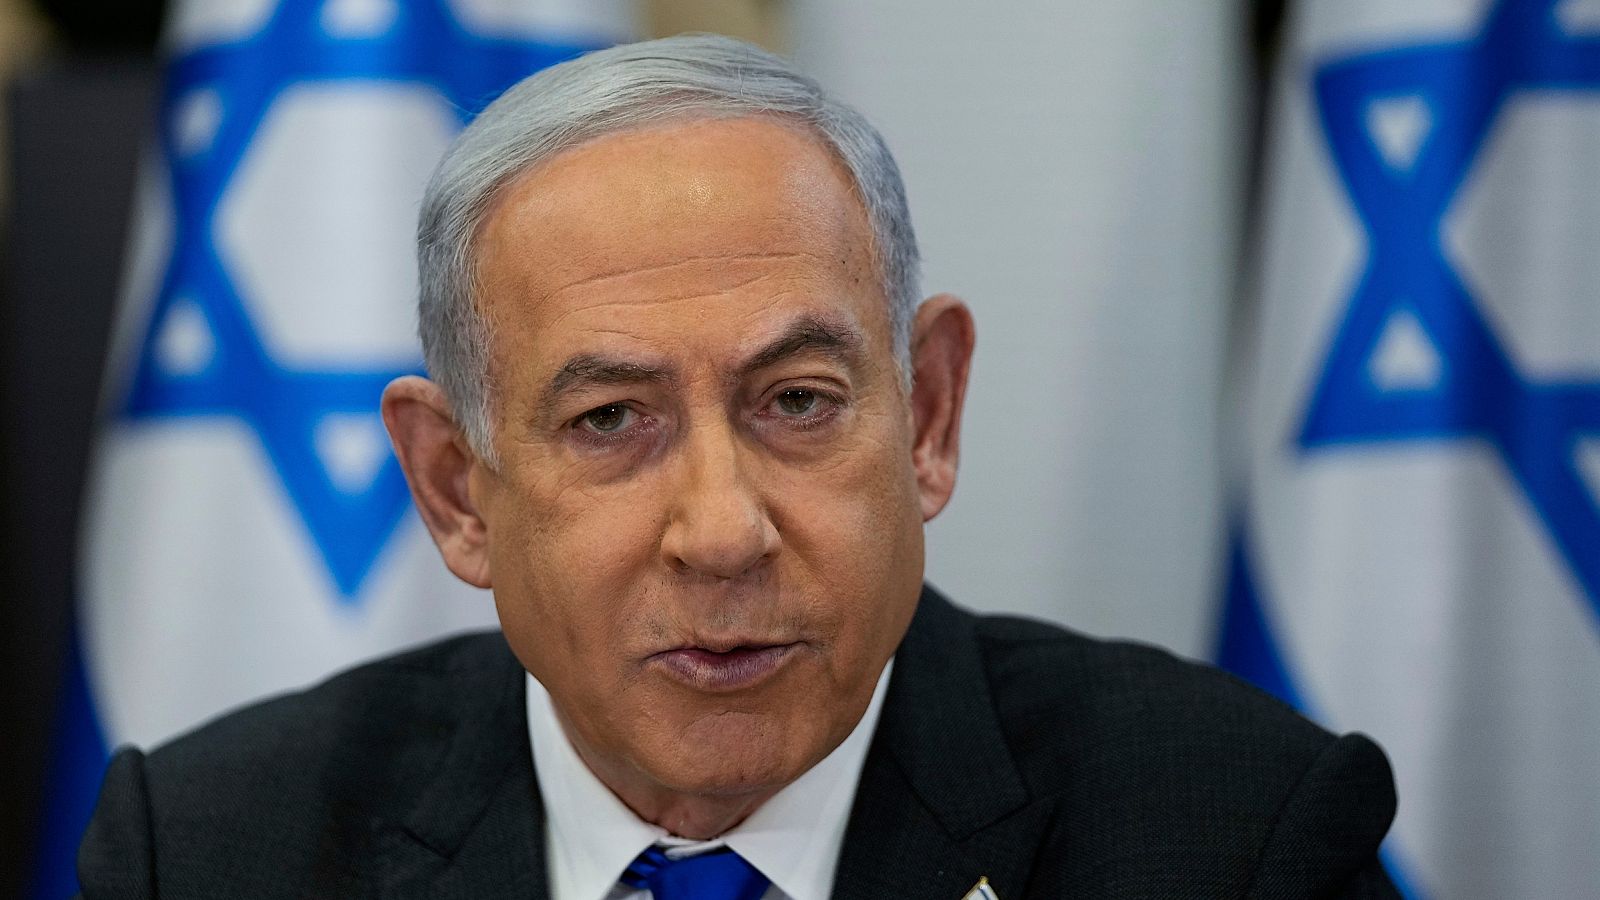 Netanyahu, contra las cuerdas despues de que el Tribunal Supremo tumbase su reforma de la justicia